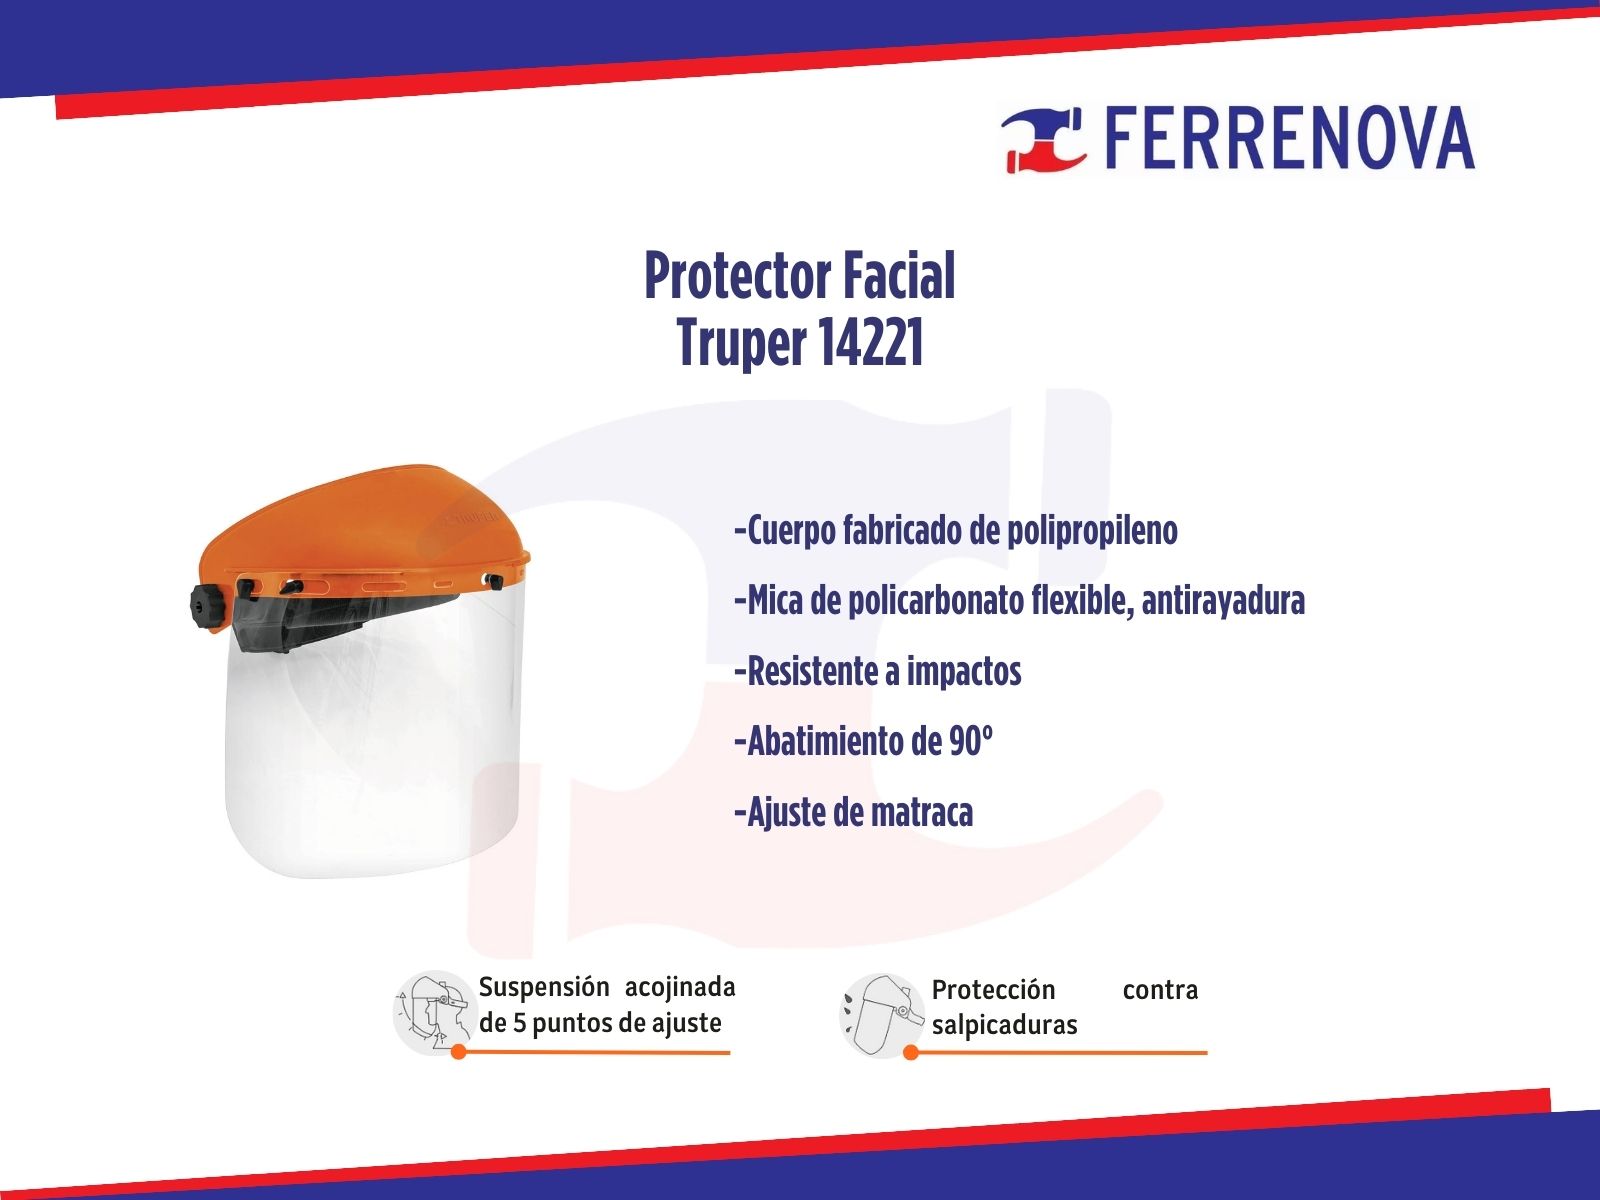 Protector Facial Truper 14221